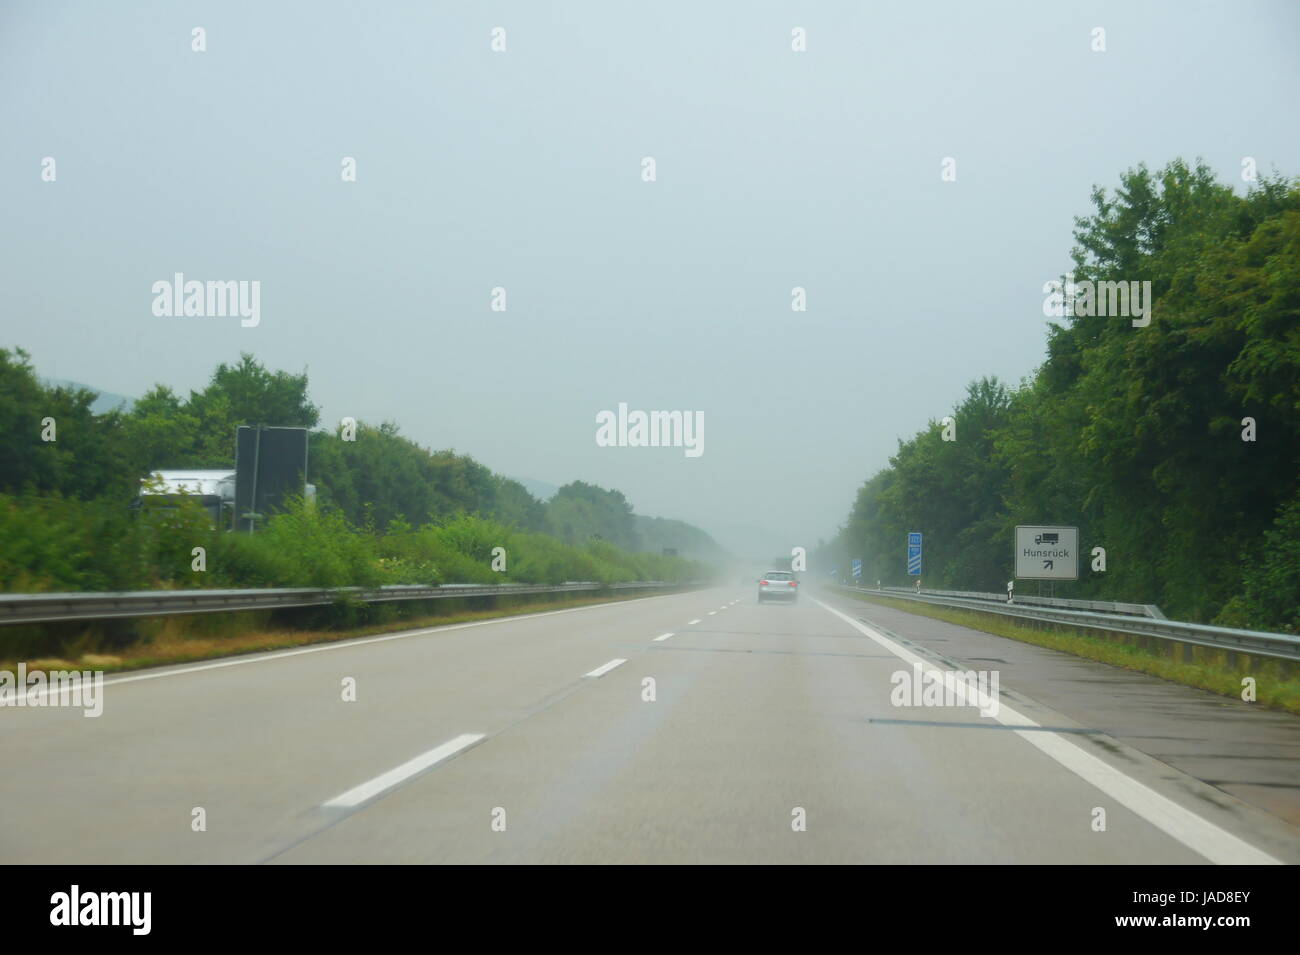 schlechte Sicht bei nasser Autobahn Stock Photo